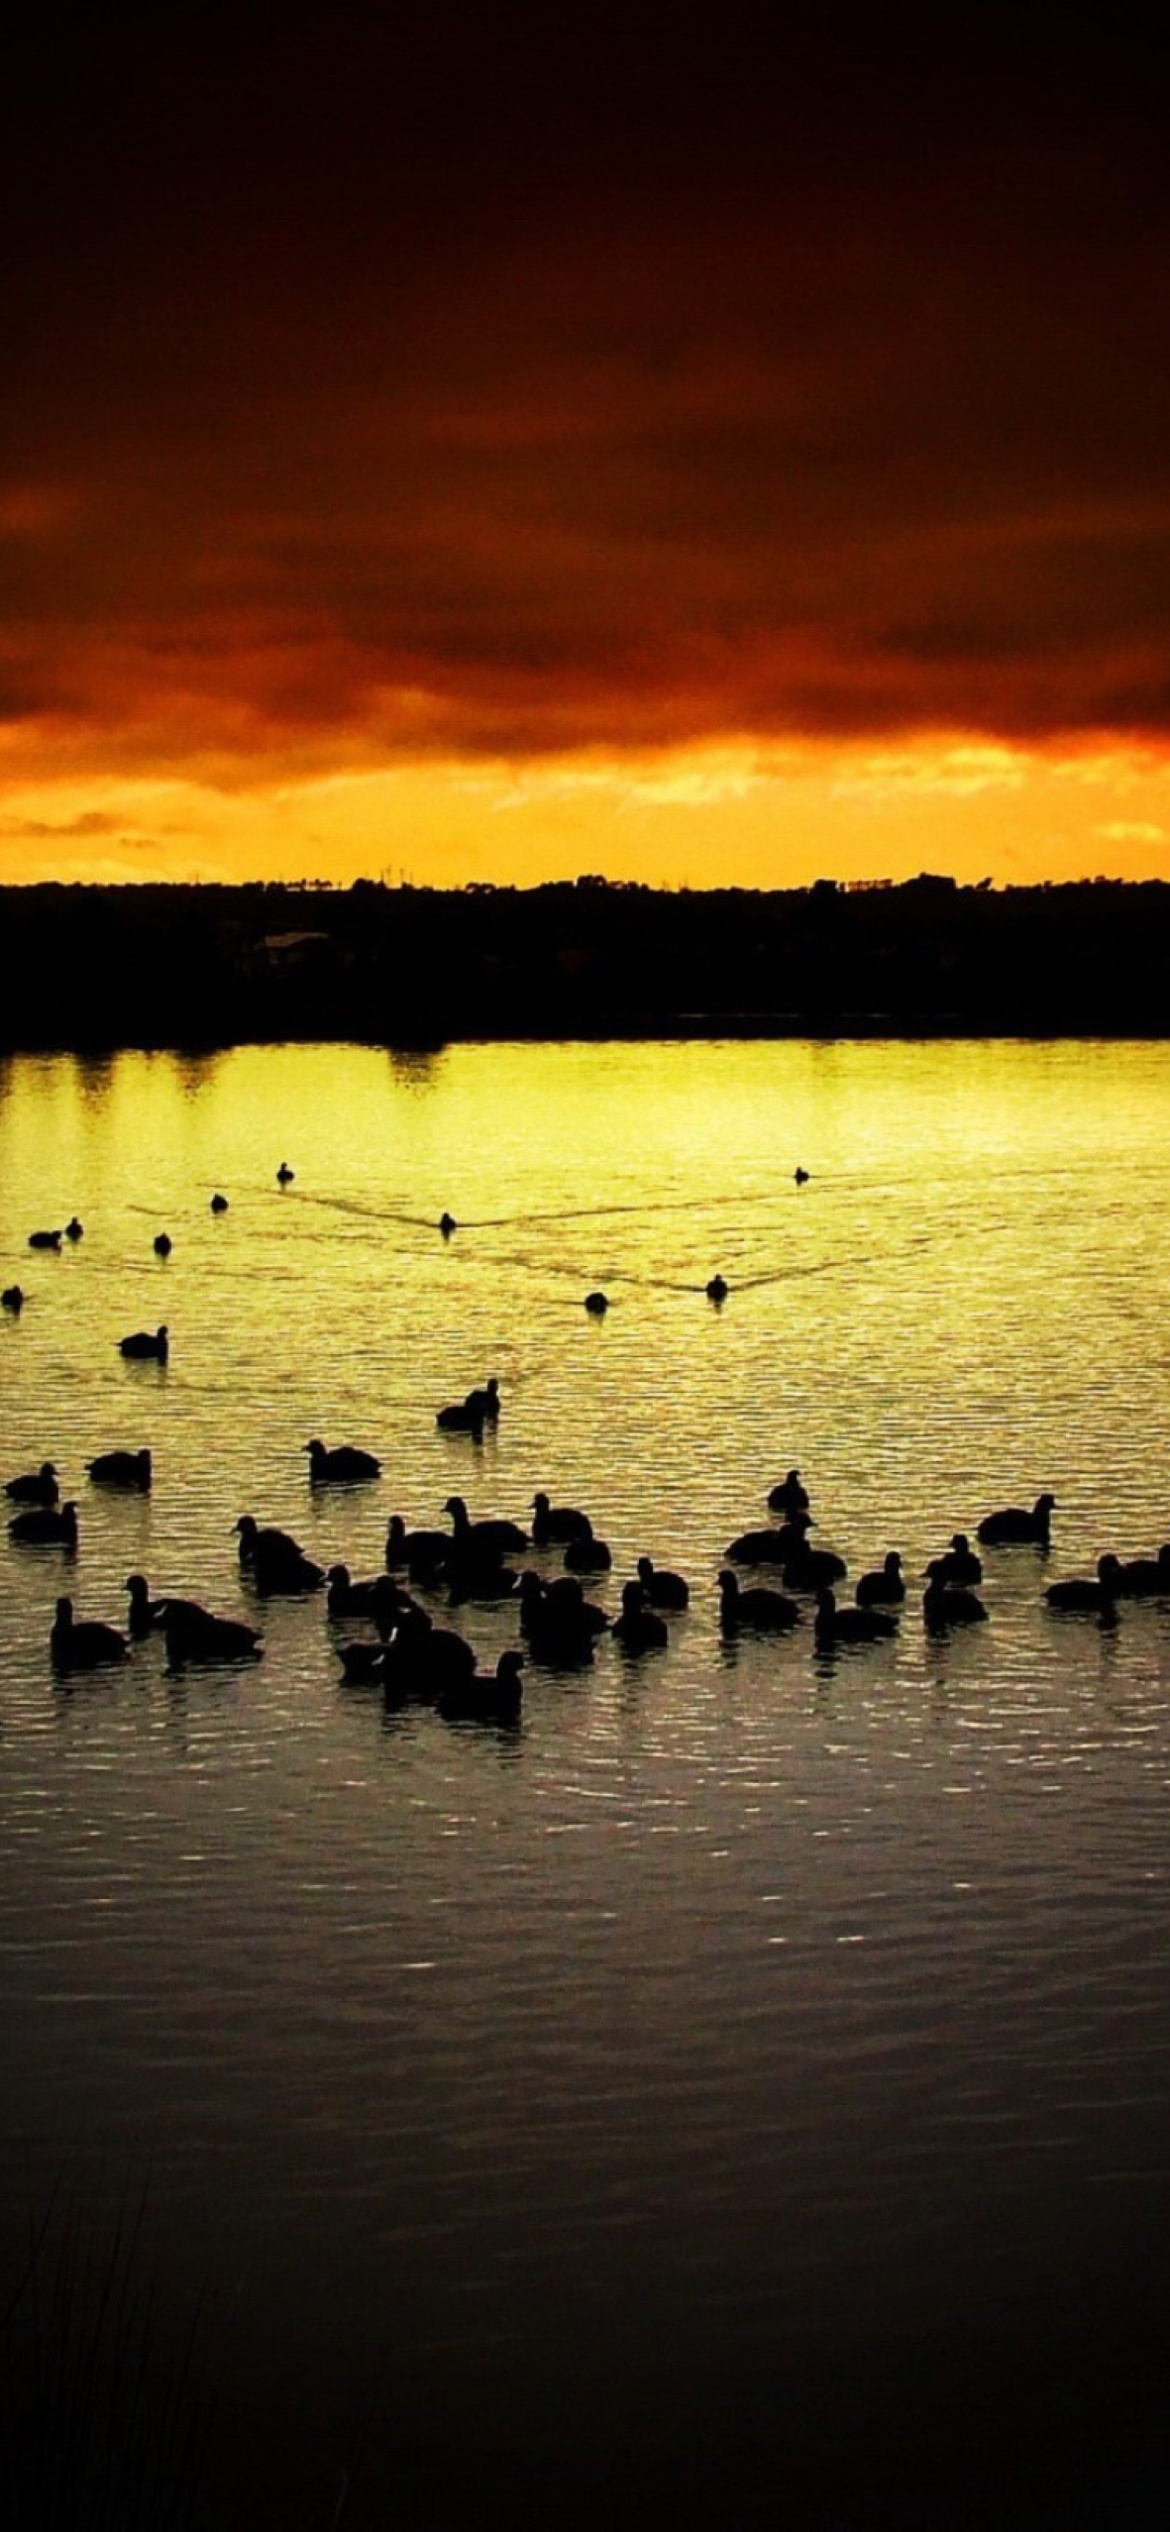 Sfondi Ducks On Lake At Sunset 1170x2532